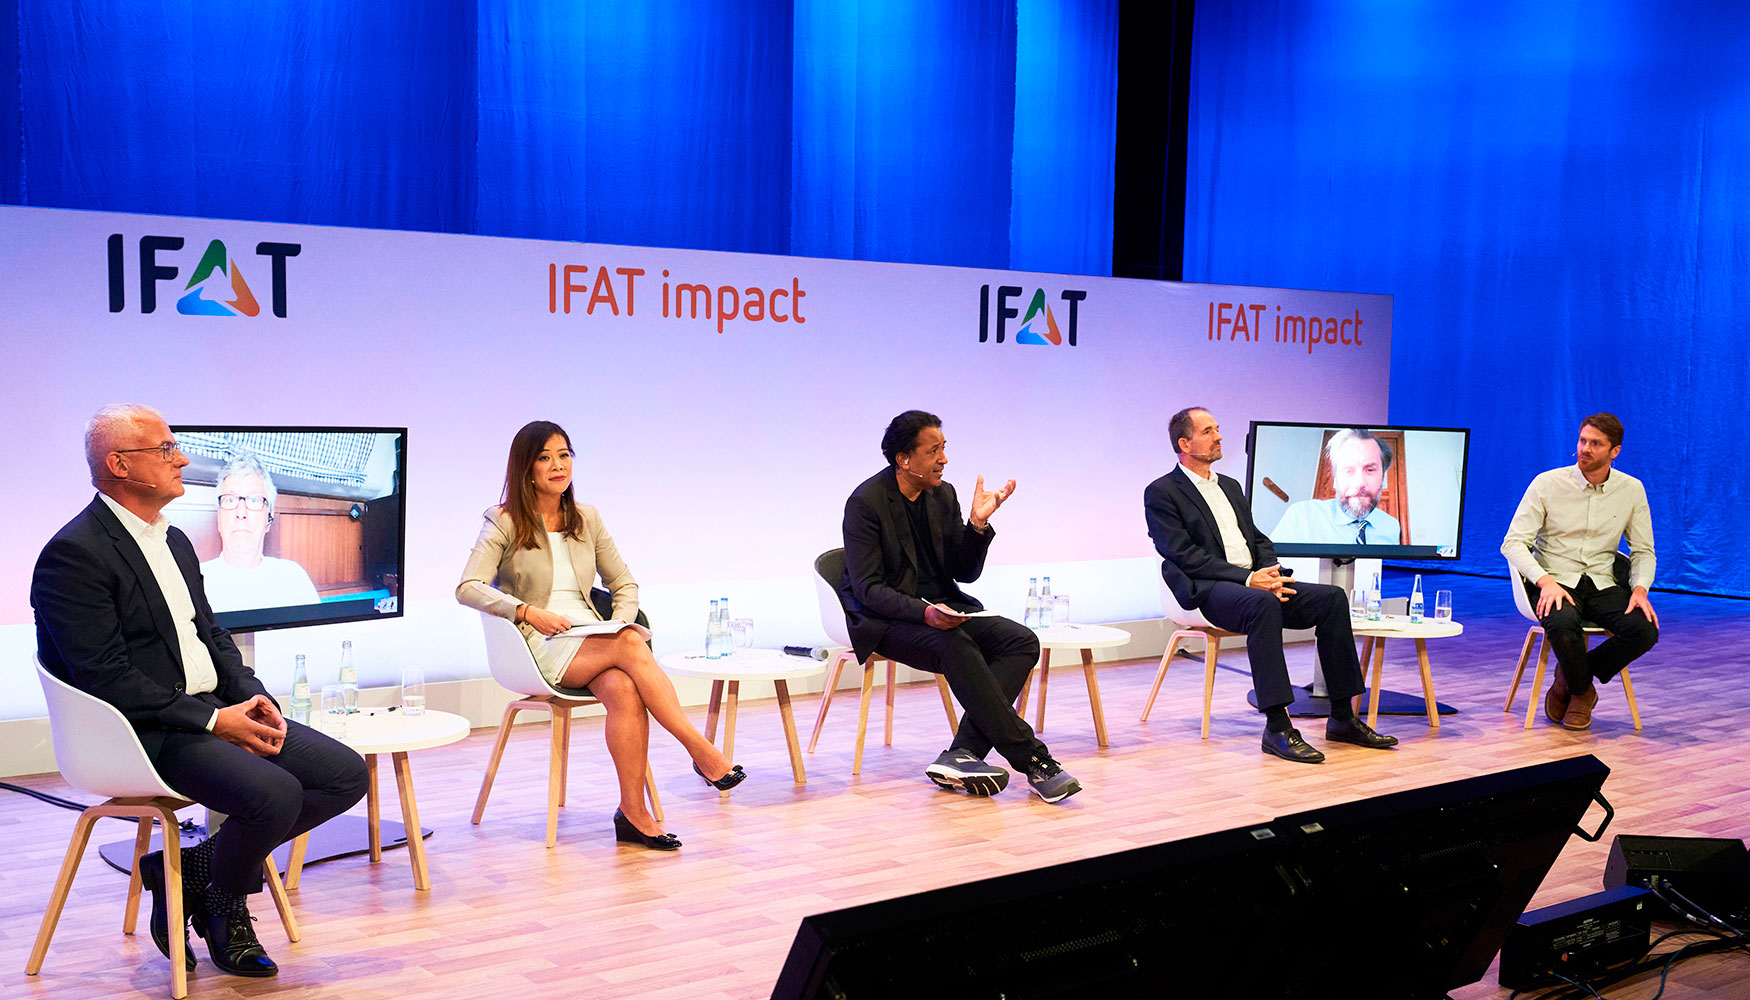 El prximo evento de 'IFAT Impact' es una gran cumbre de negocios digitales en septiembre...